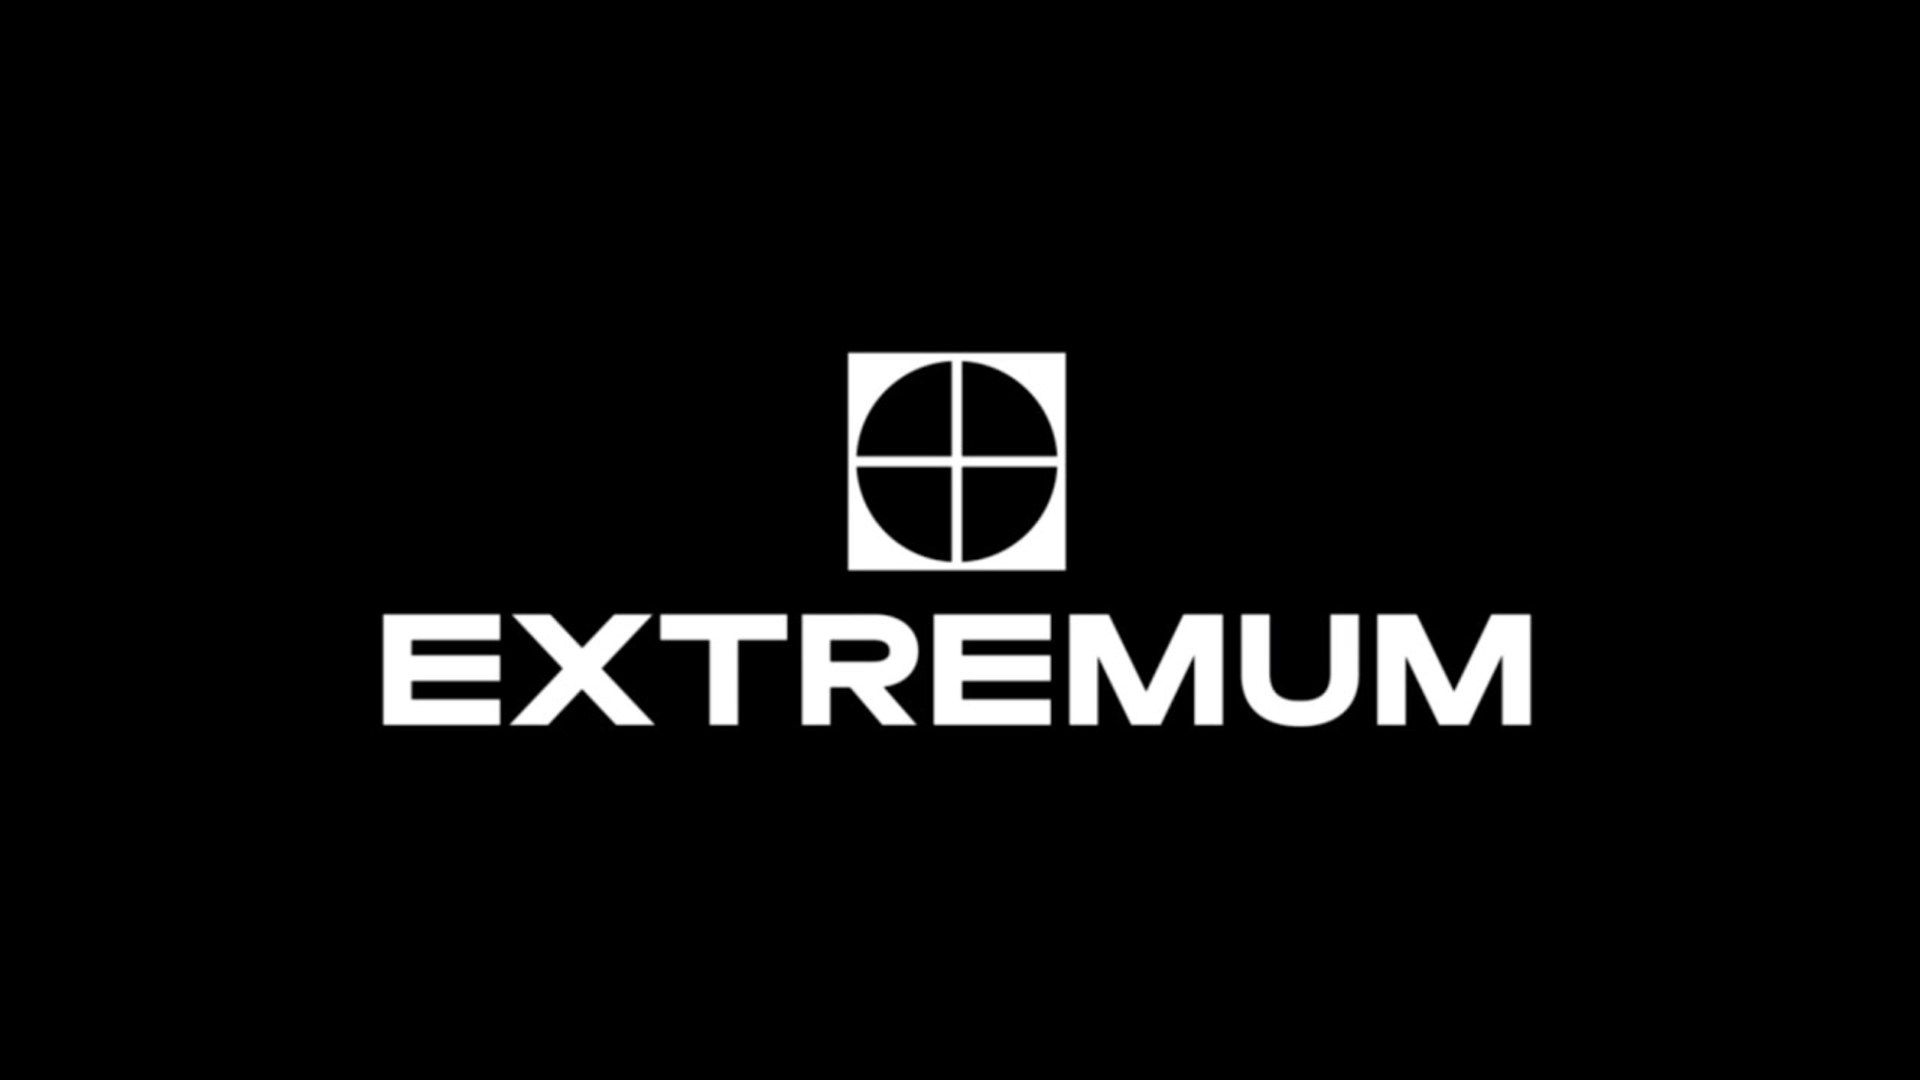 Extremum ակումբը փակվել է մեկ տարի առաջ, բայց դրա մասին հայտնի է դարձել օրերս